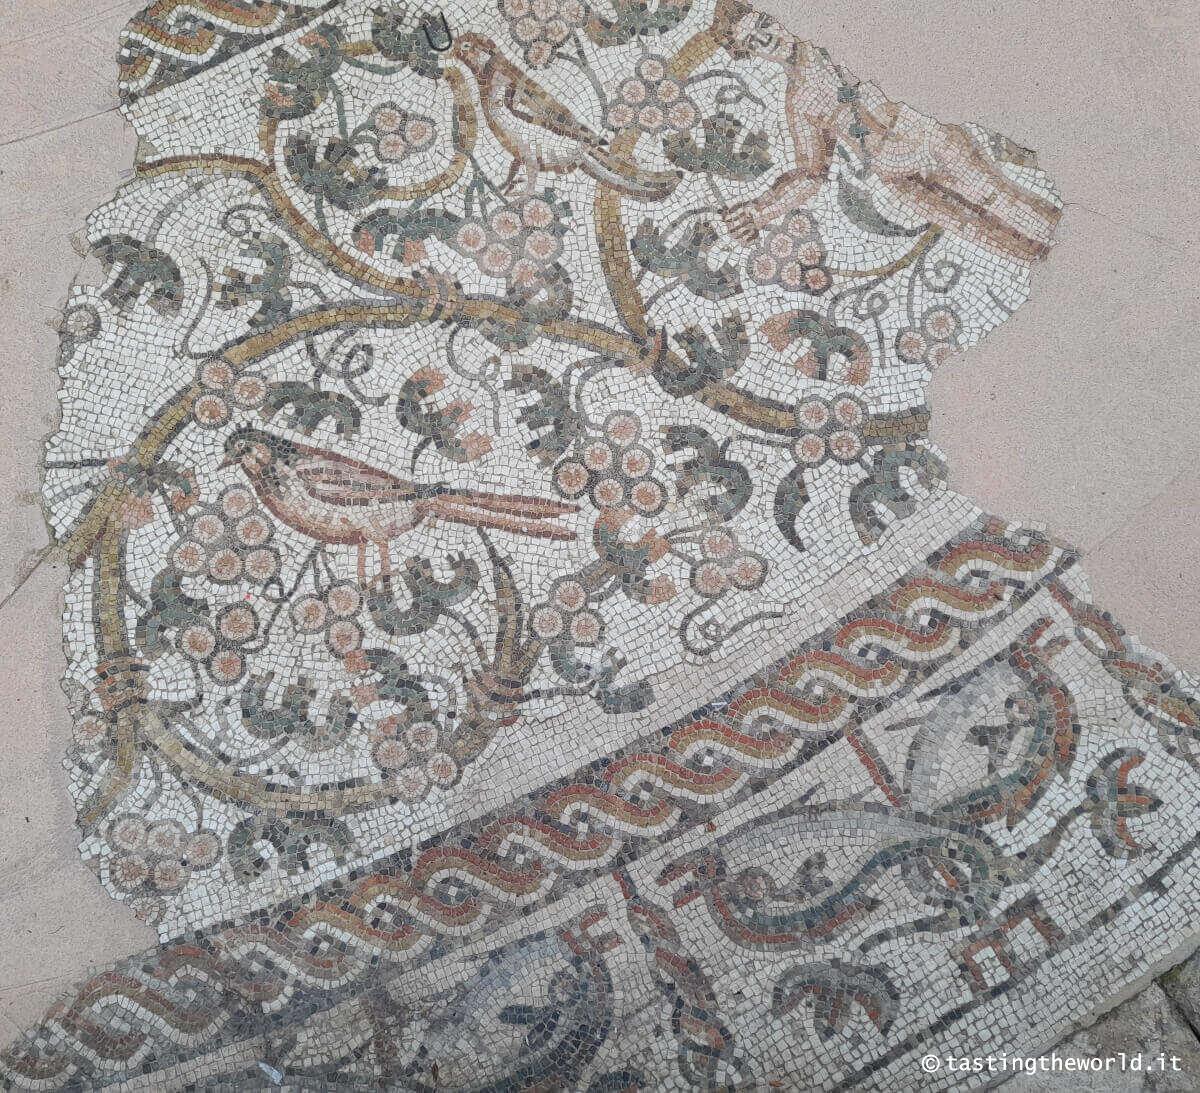 Mosaico tardoantico - Treviso